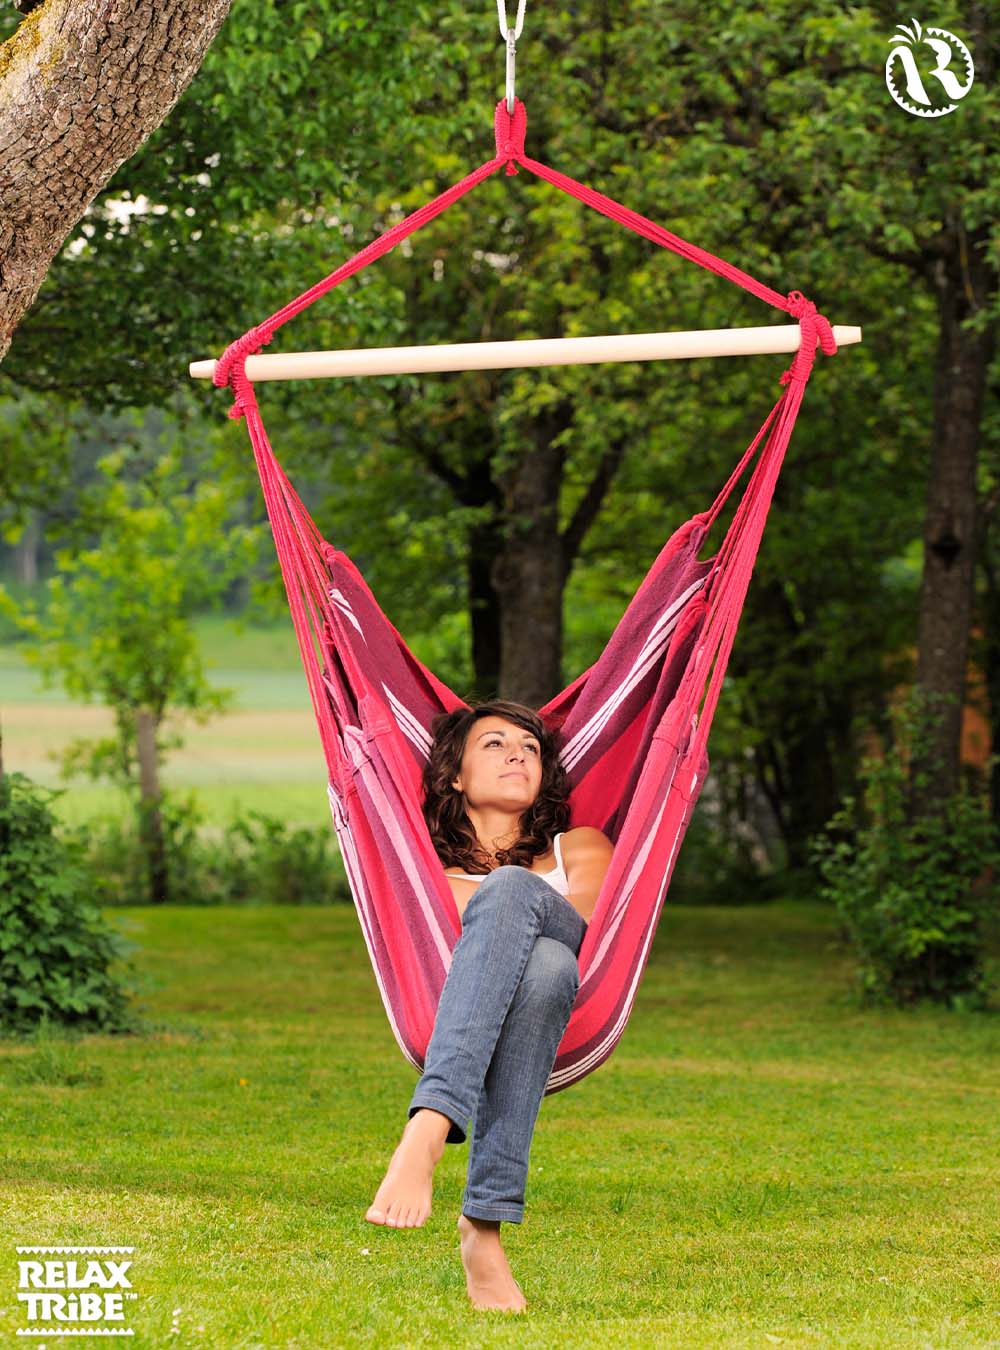 havanna-fuego-double-xl-weatherproof-hammock-chair-home-garden-red-bordeaux-outdoor-tree